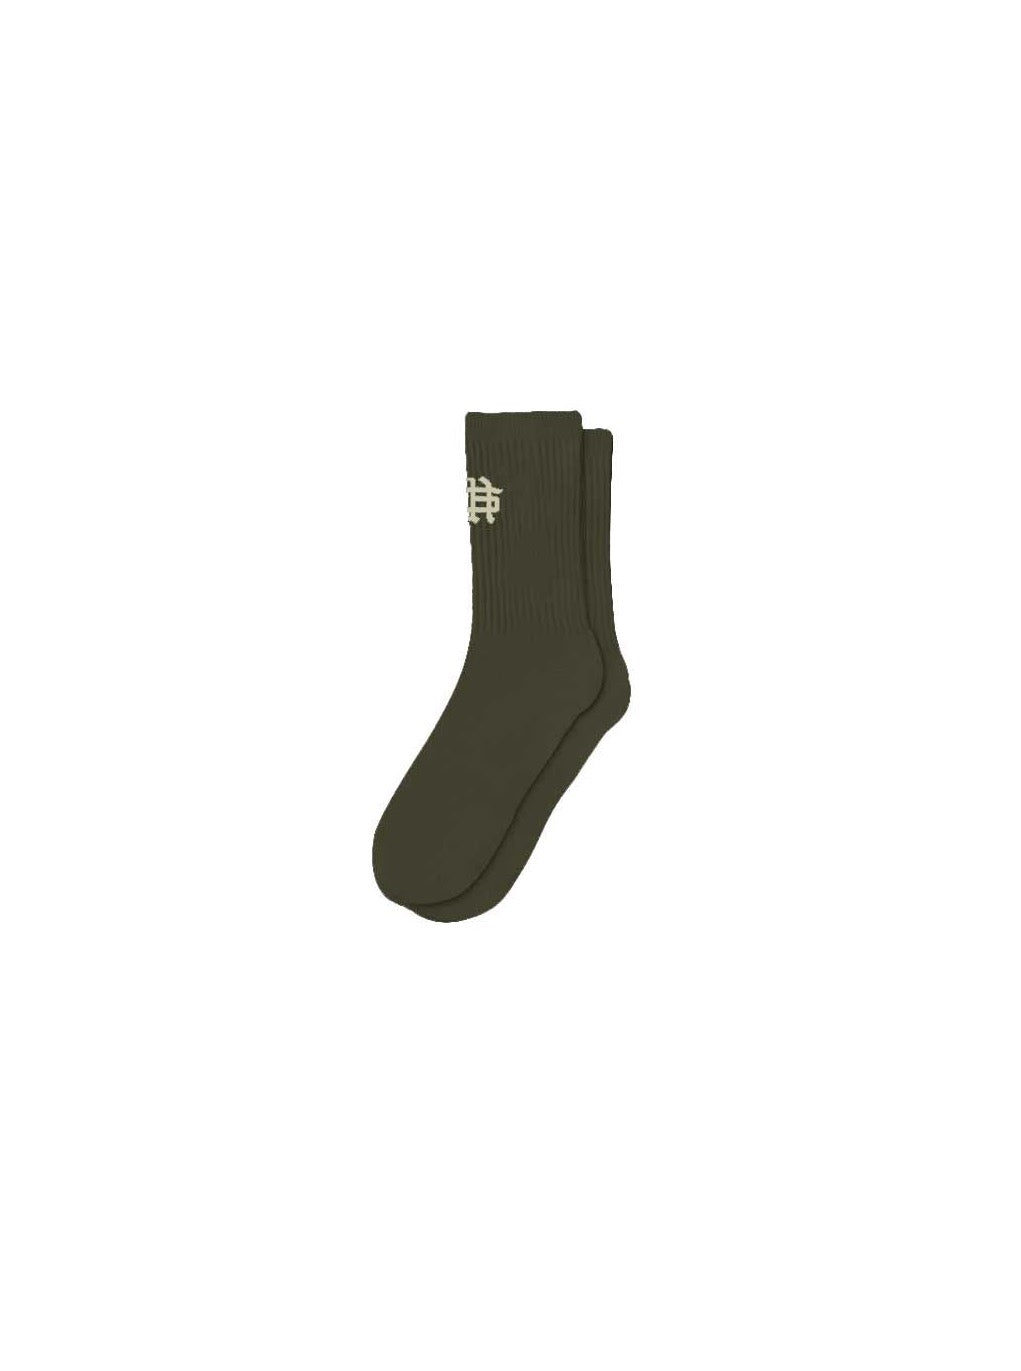 Sohle et. Al Revølutiøn Socke : Militärgrün / Sand